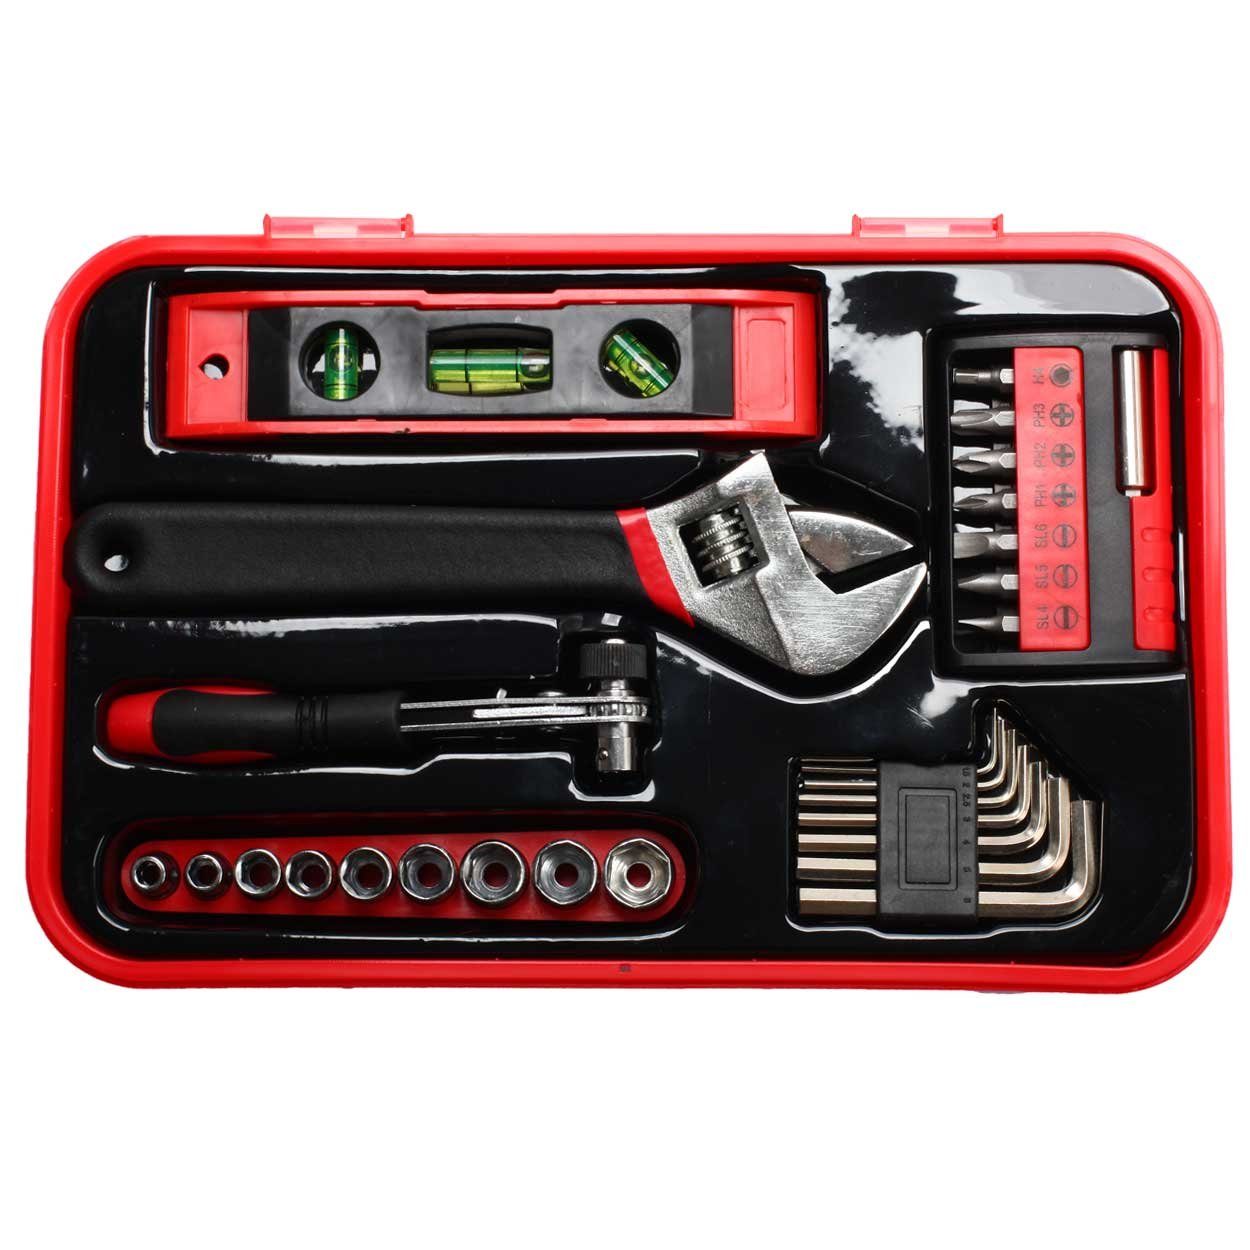 Handwerkzeug SCHMIDT 27-teilig security tools Box Set Werkzeugsatz Werkzeugkoffer TS-27 Werkzeugset